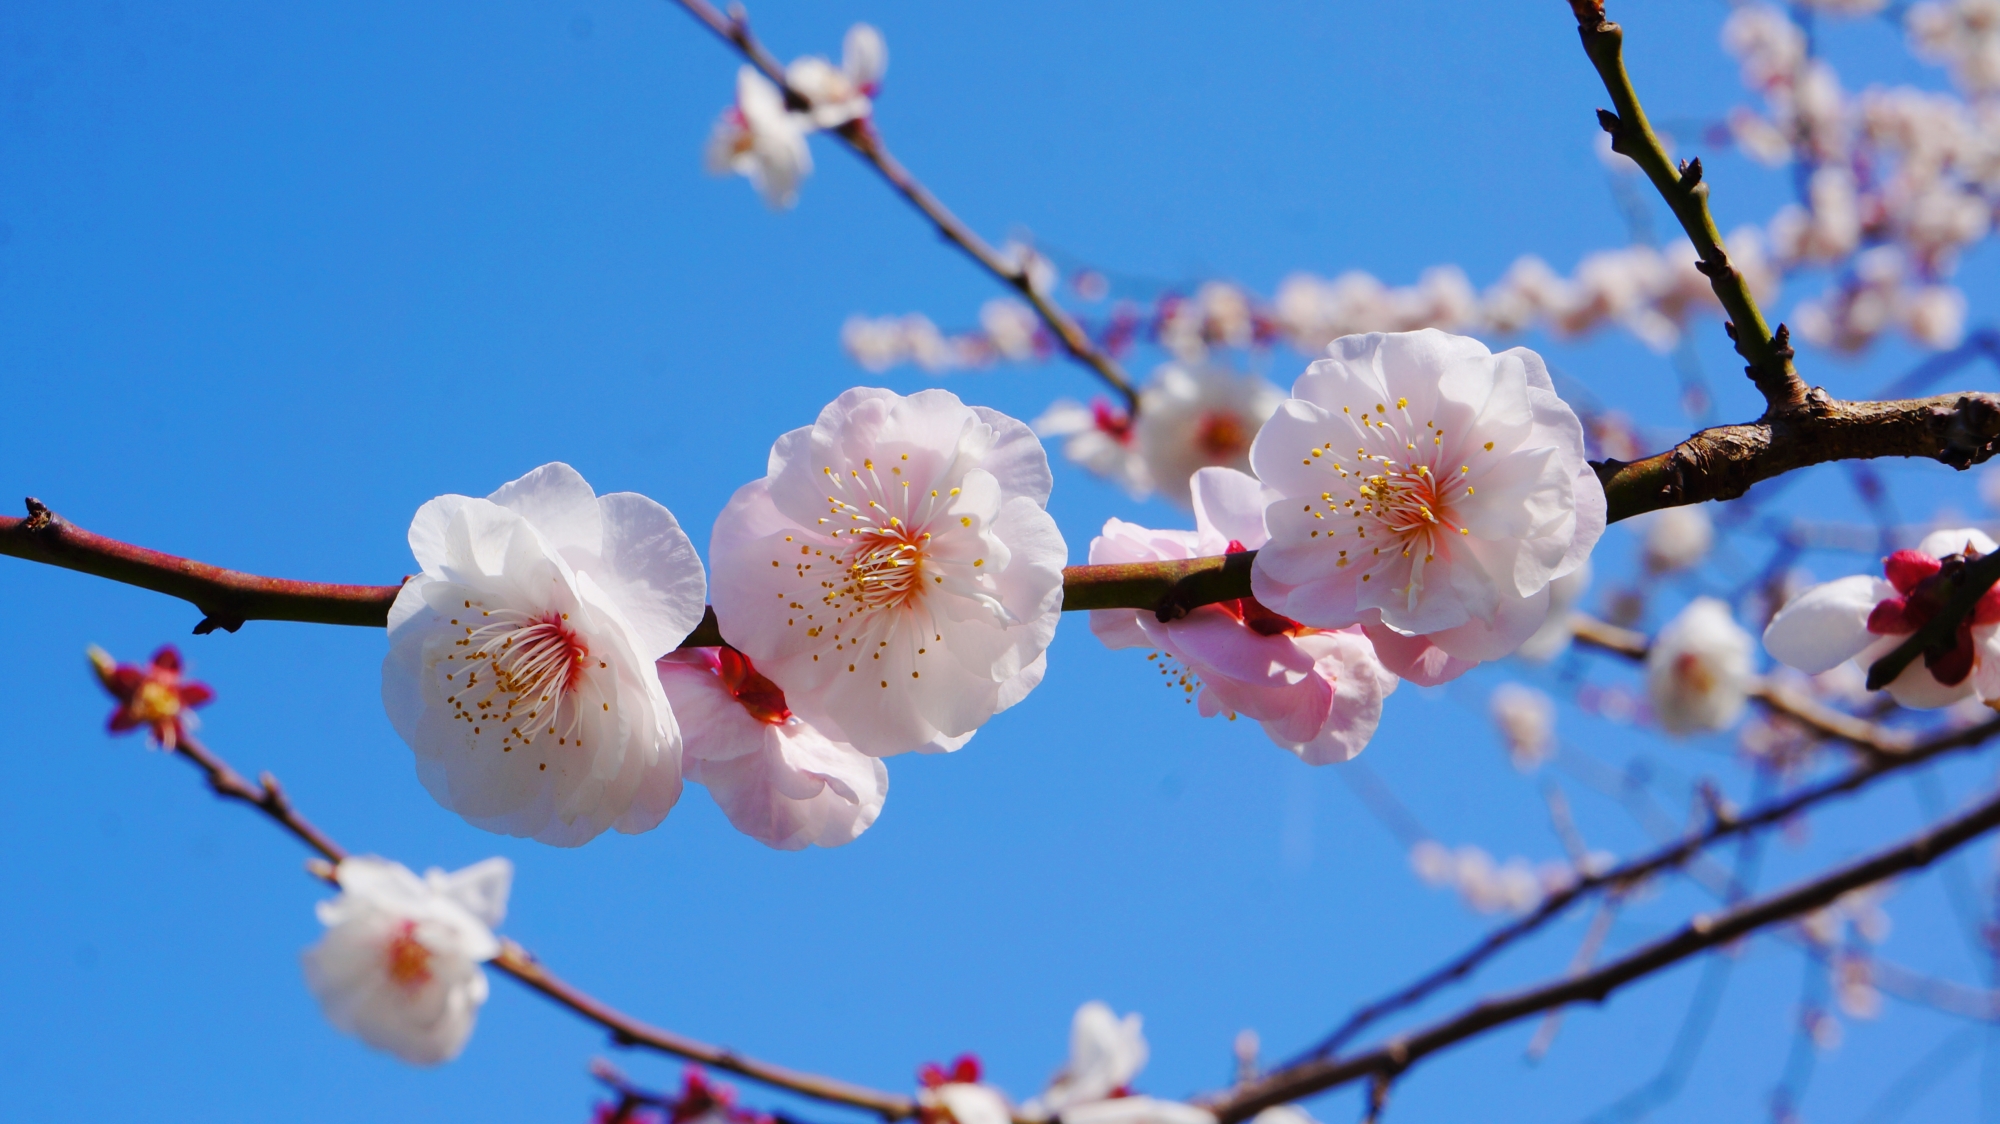 京都御苑の華やかな梅の花